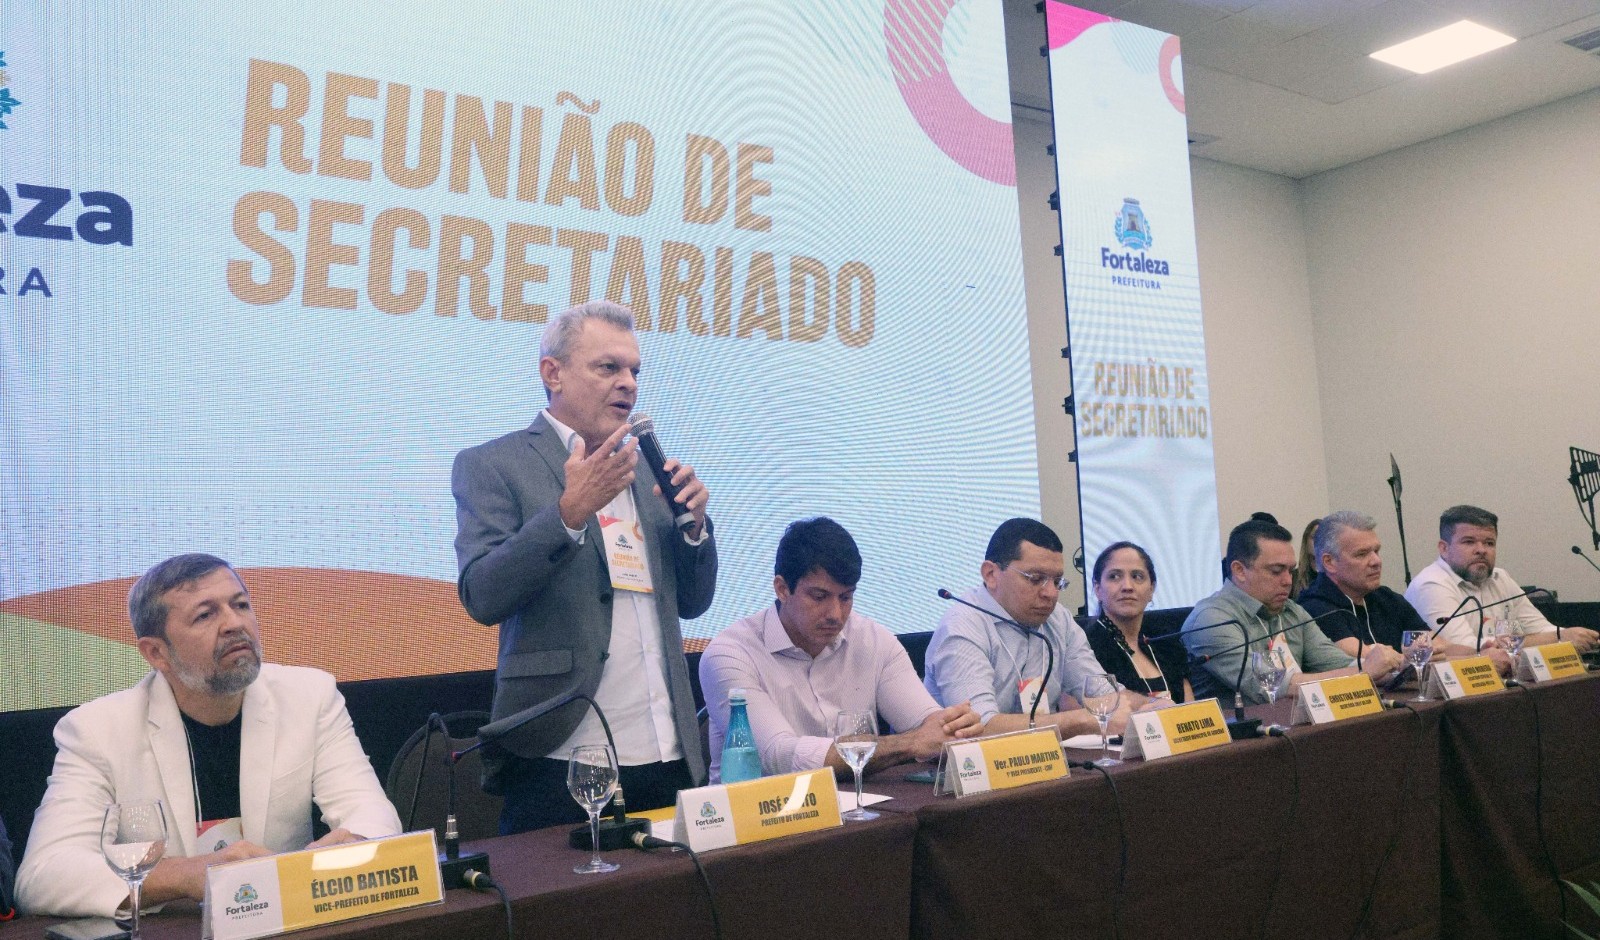 Ceará tem elevada carência de auditores do trabalho, Eliomar de Lima